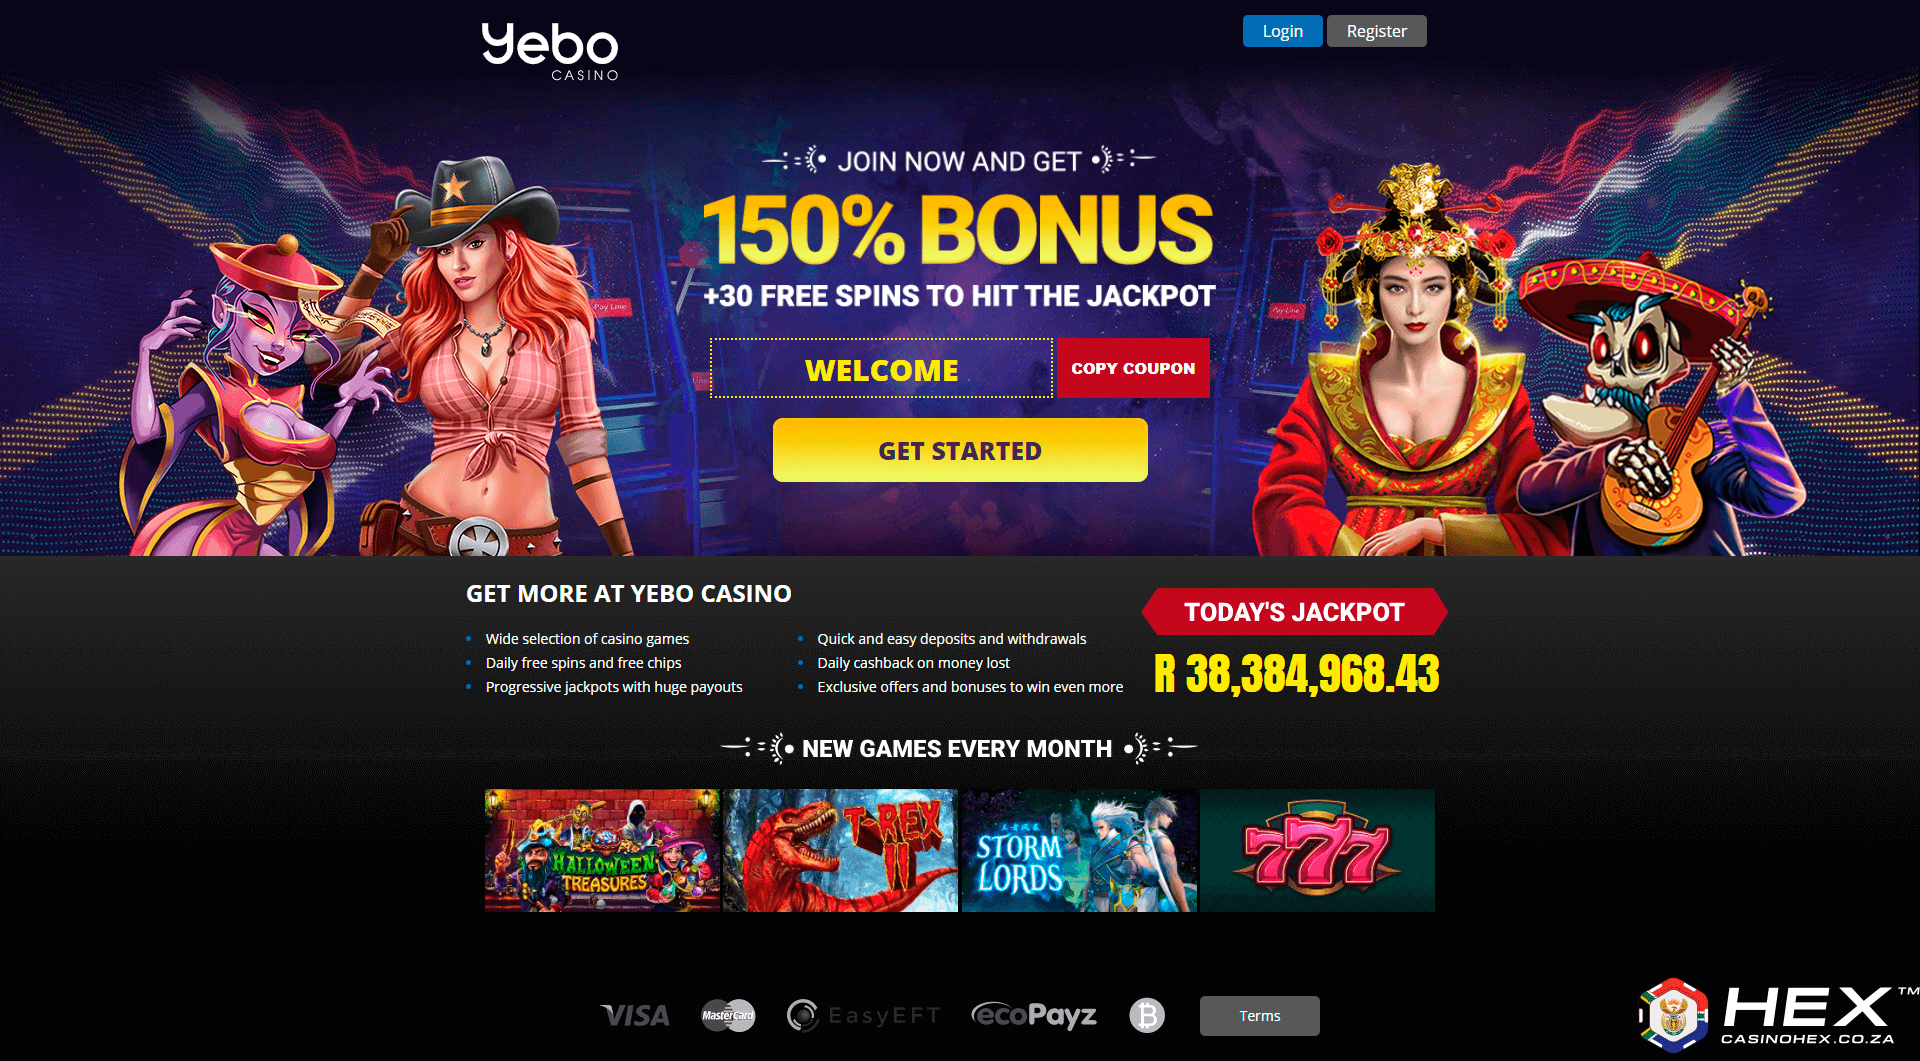 Yebo casino welcome bonus for CasinoHEX players